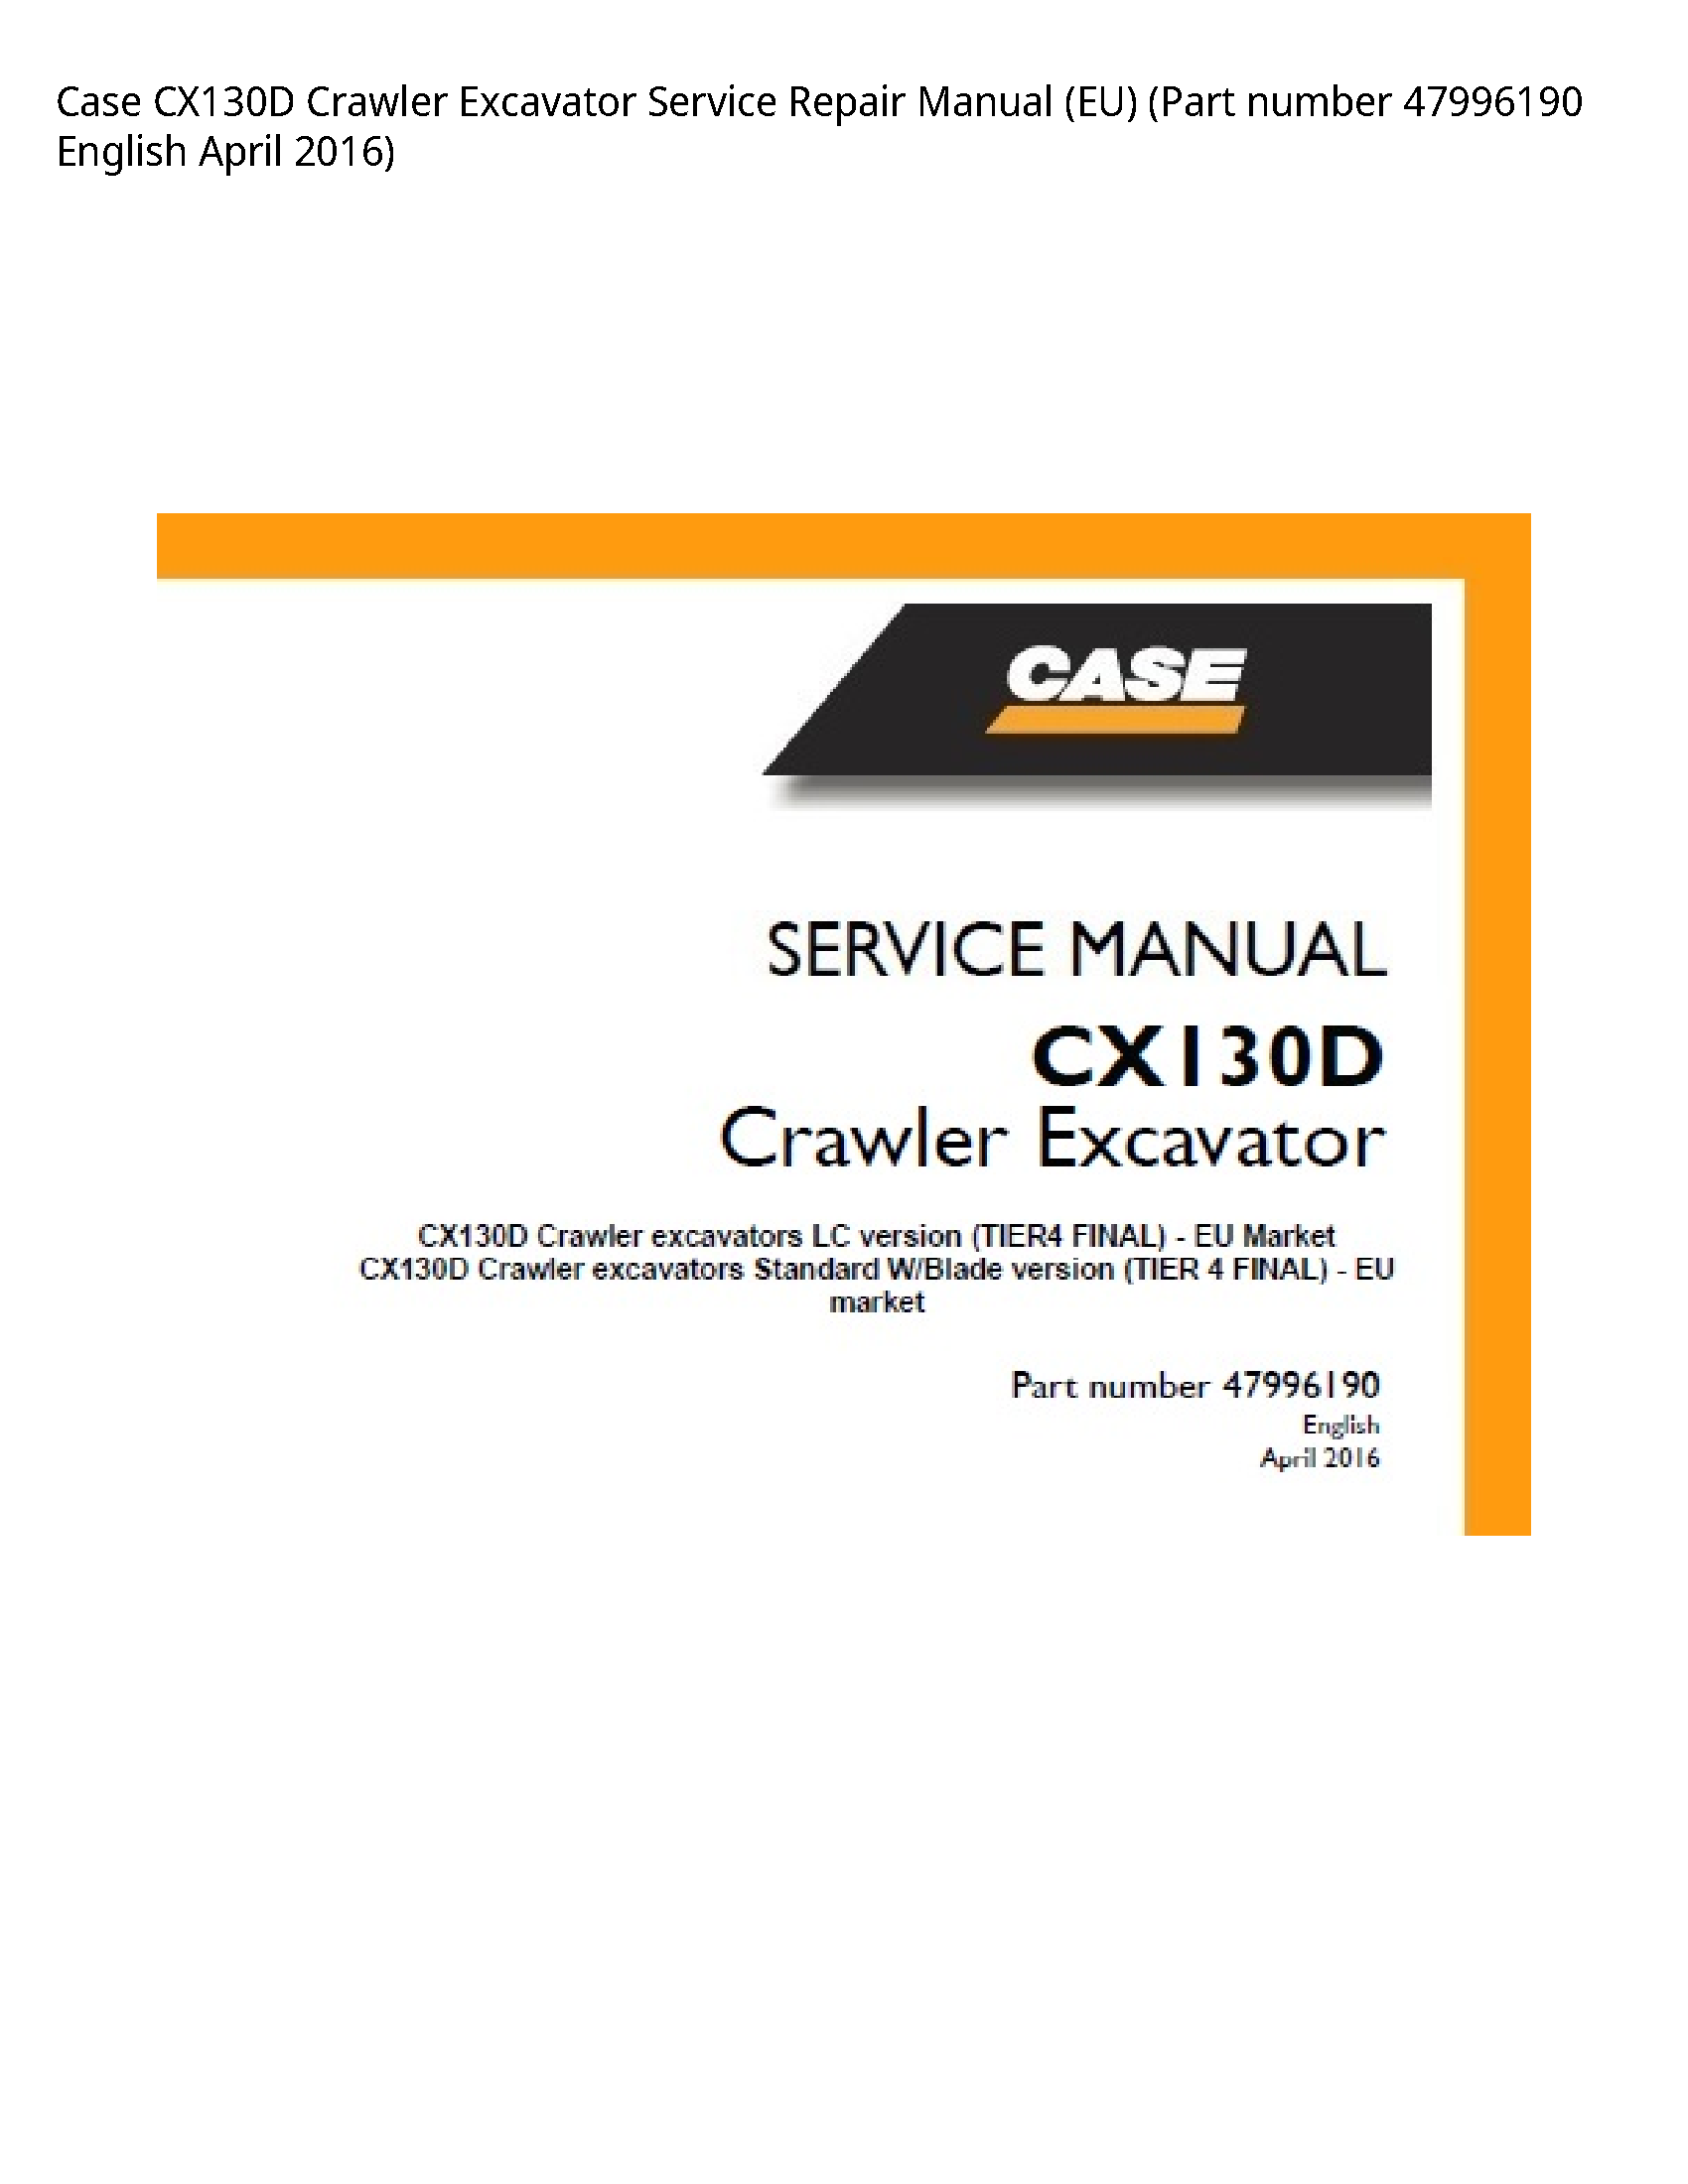 Case/Case IH CX130D Crawler Excavator manual